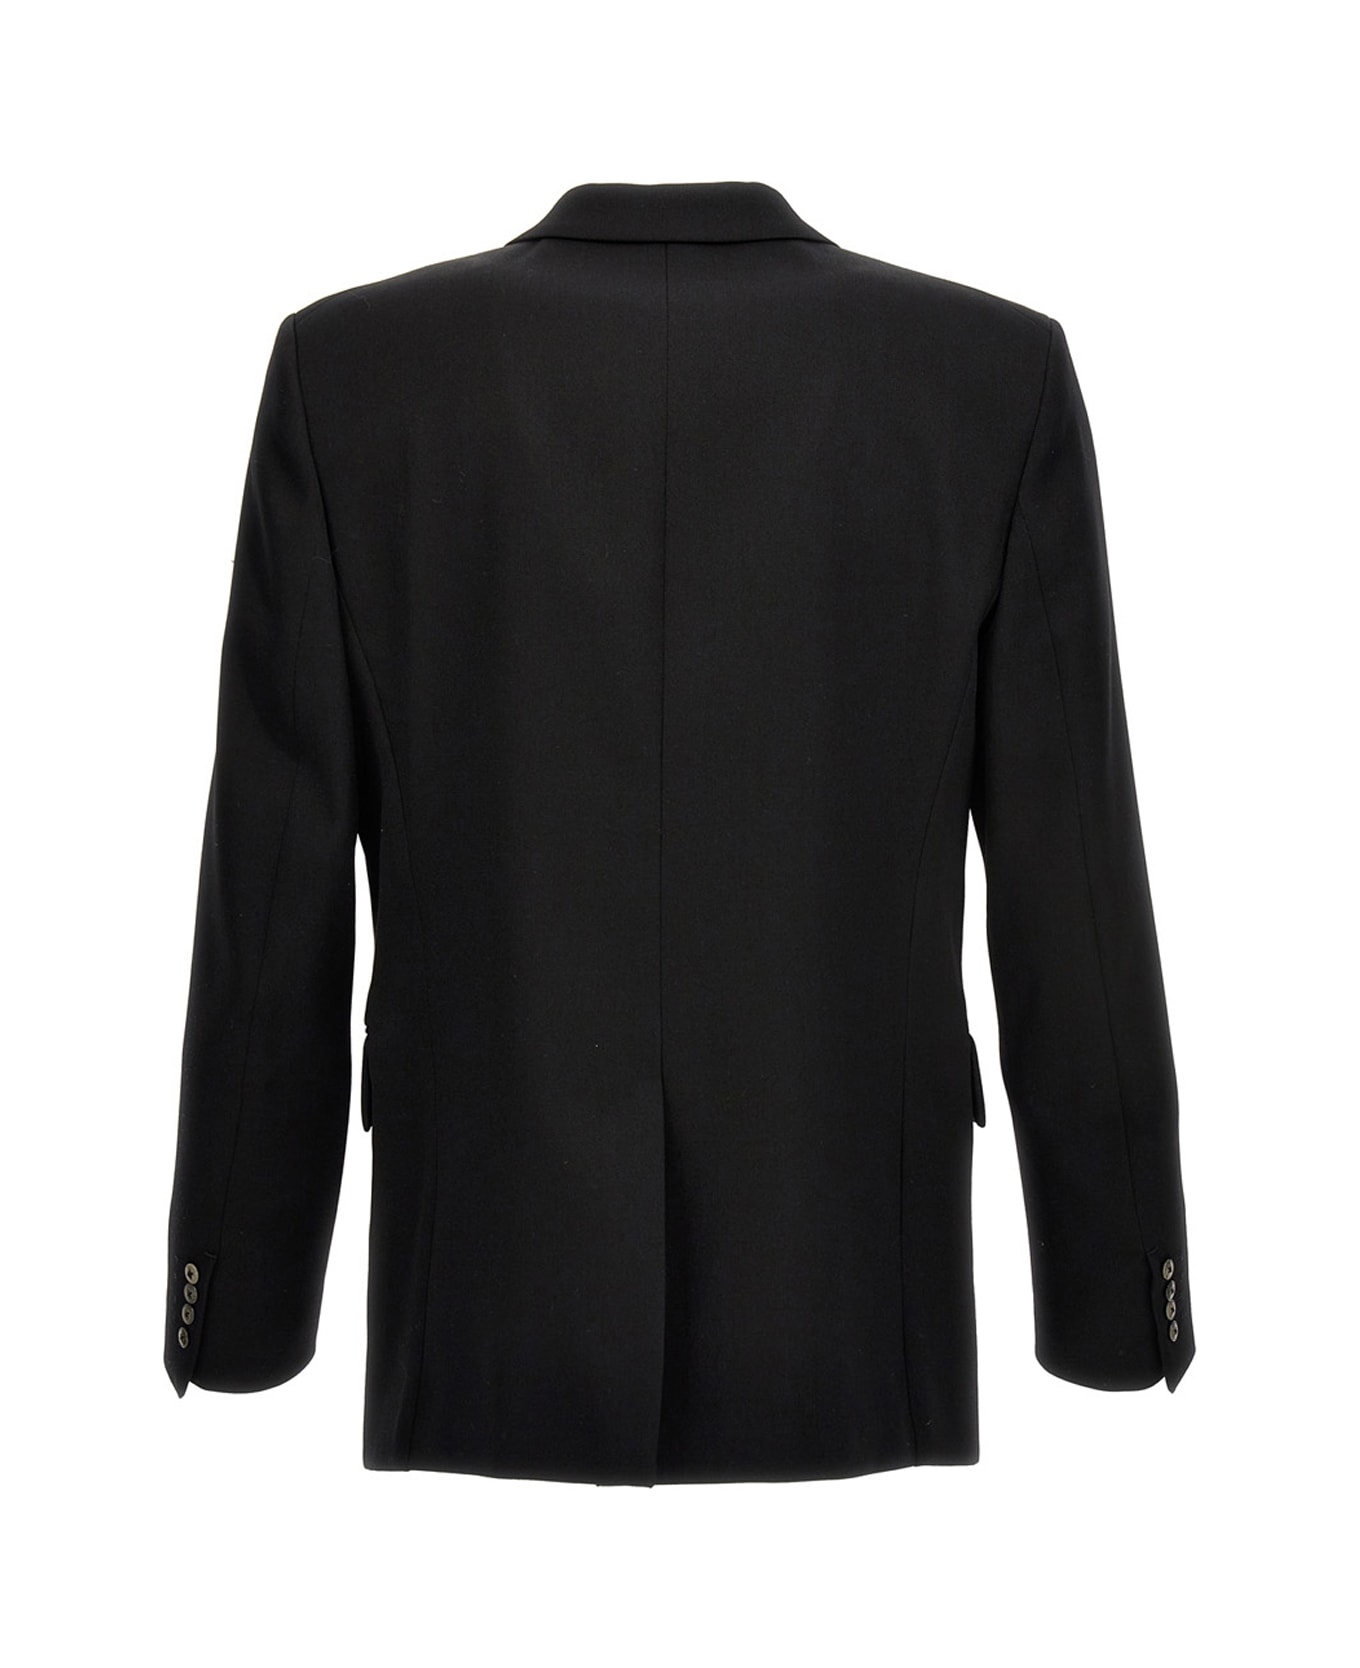 Lanvin Wool Single Breast Blazer Jacket - Black   ブレザー